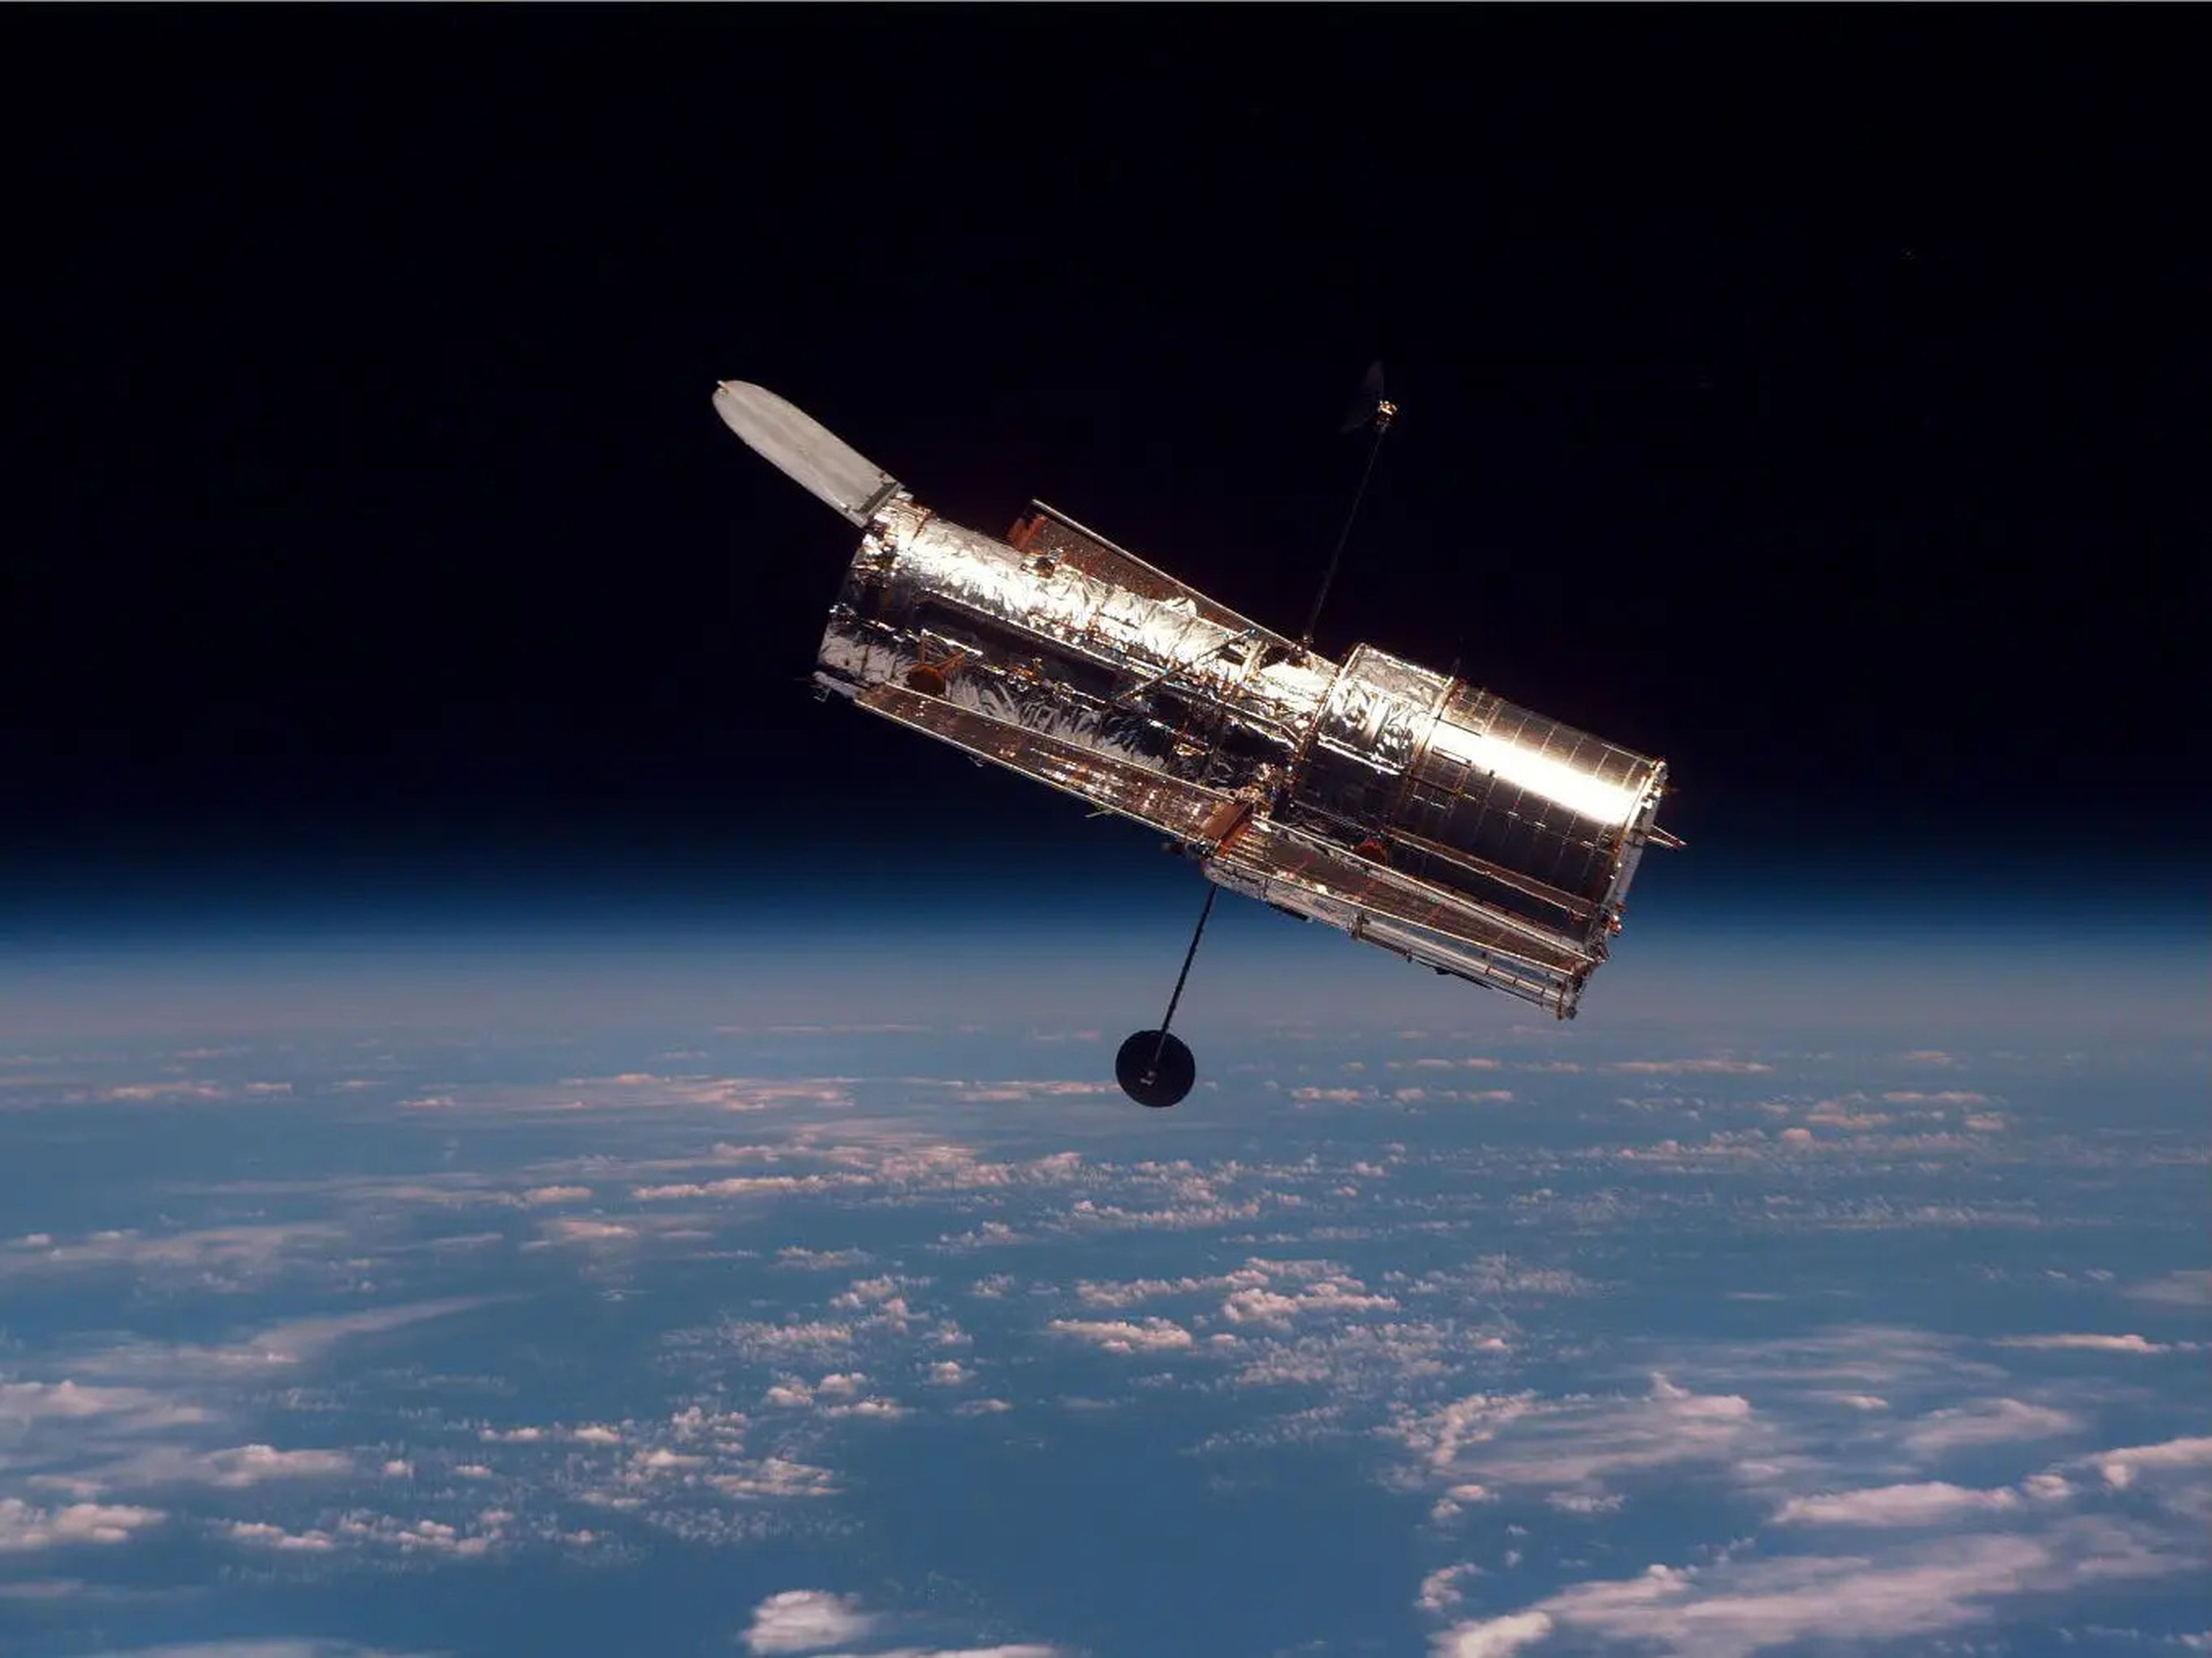 El telescopio Espacial Hubble orbita la Tierra y estudia el universo con gran detalle.